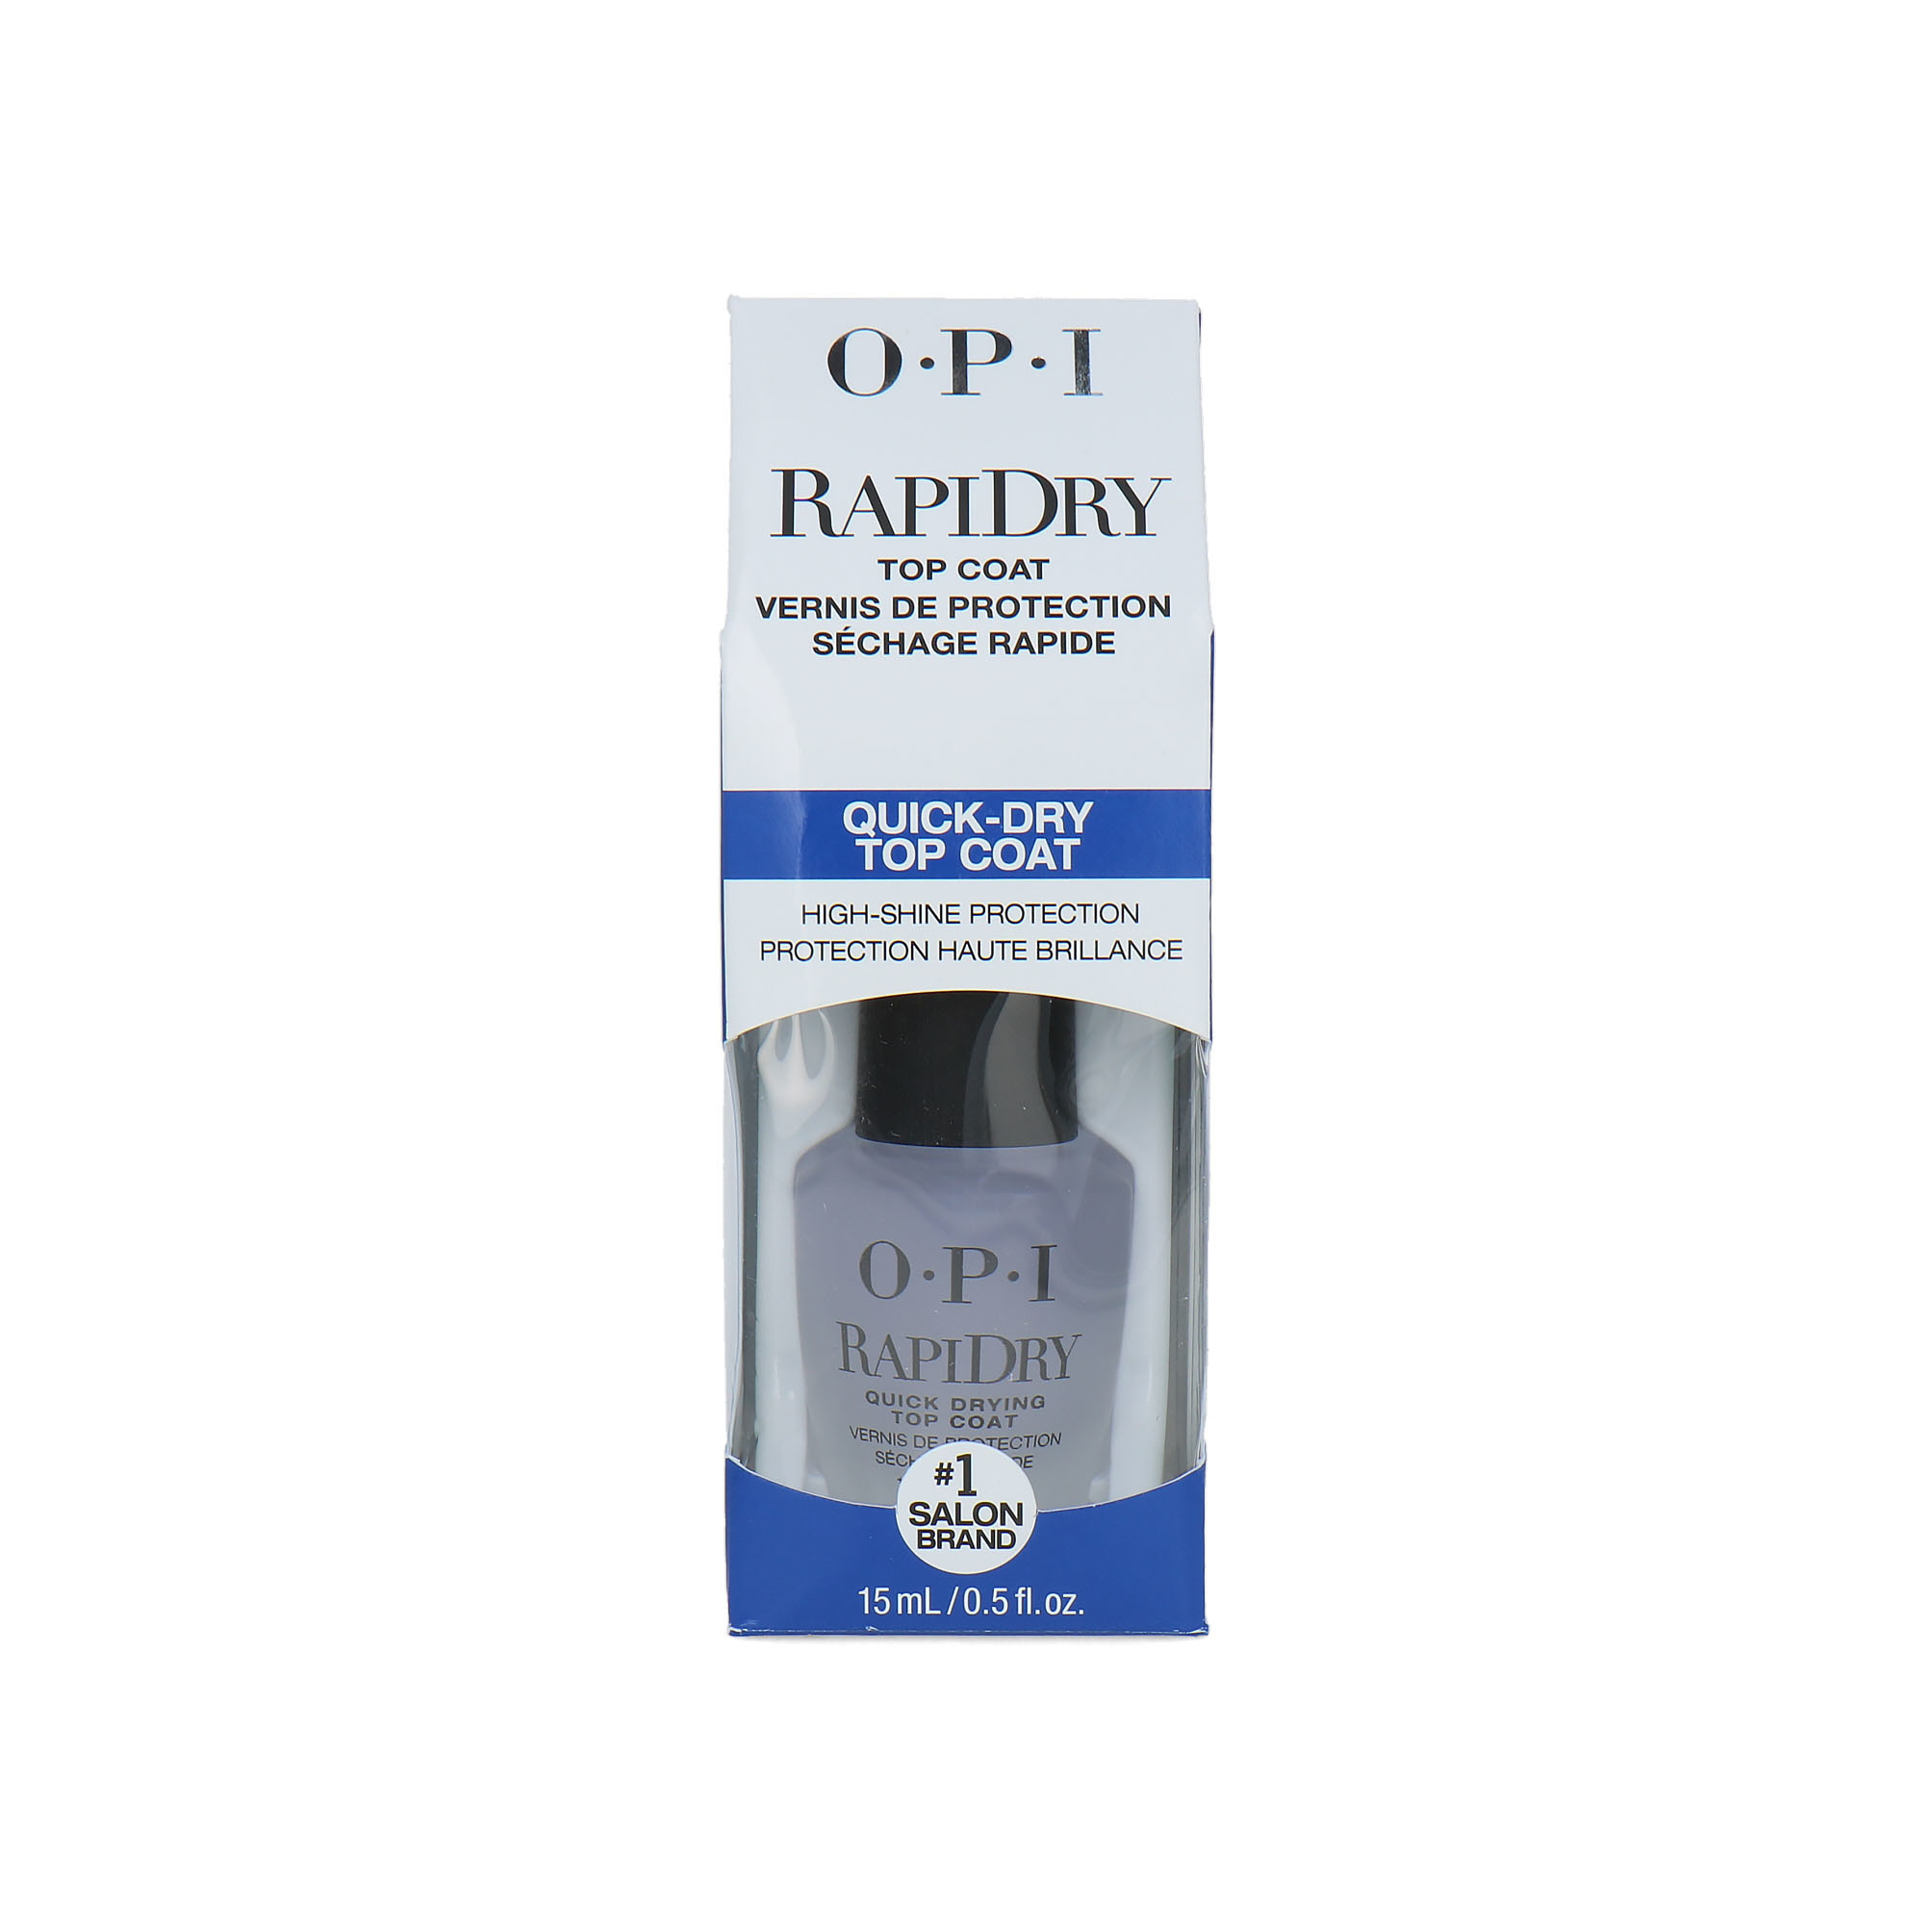 O.P.I RapiDry Quick Dry Top Coat en ligne chez Blisso